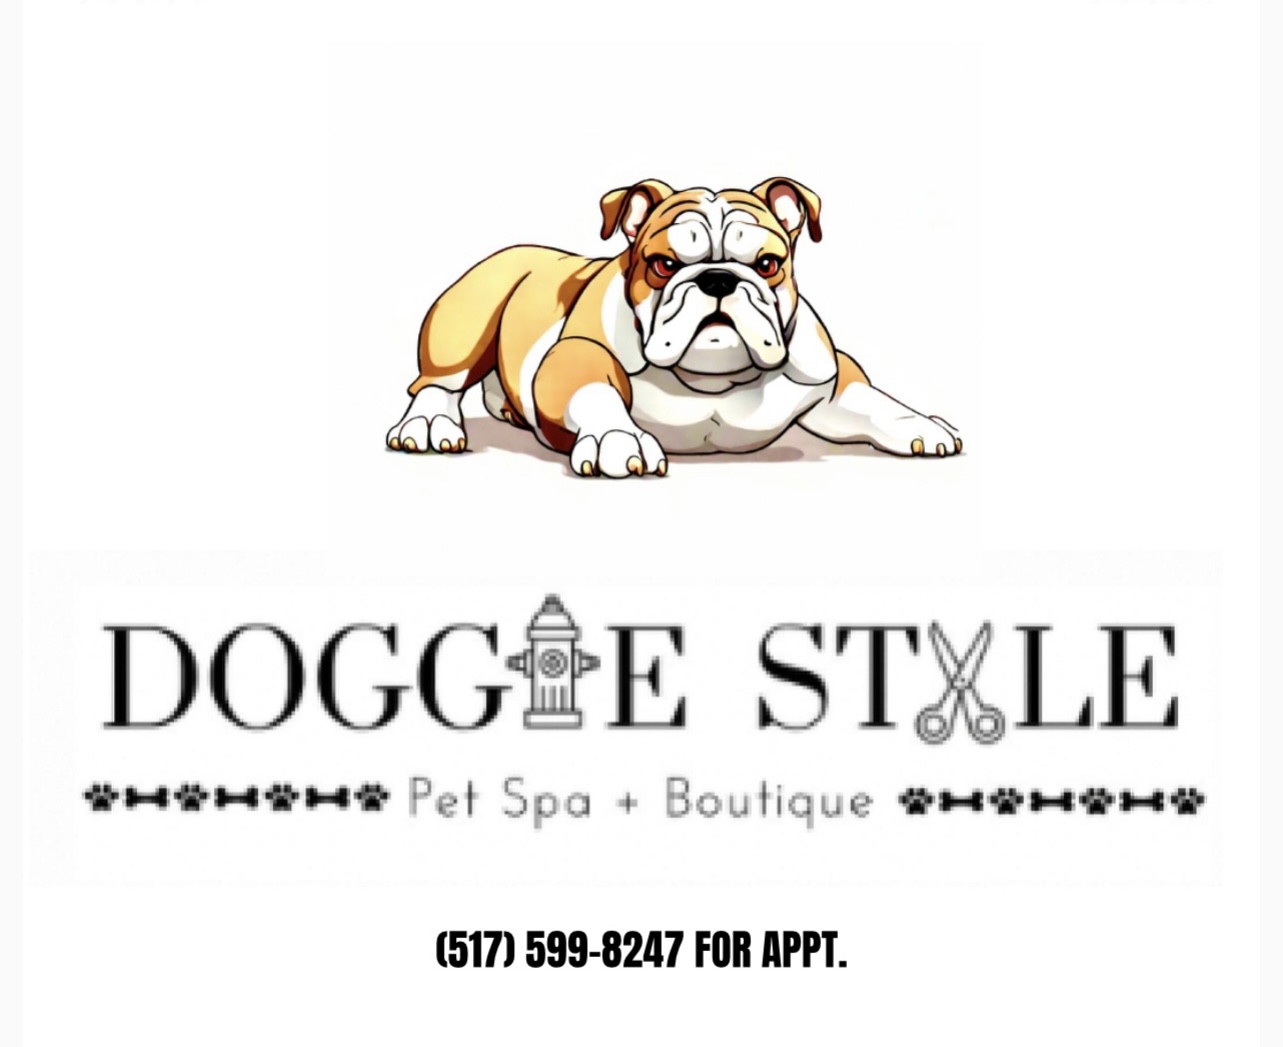 Doggie Style Pet Spa & Boutique